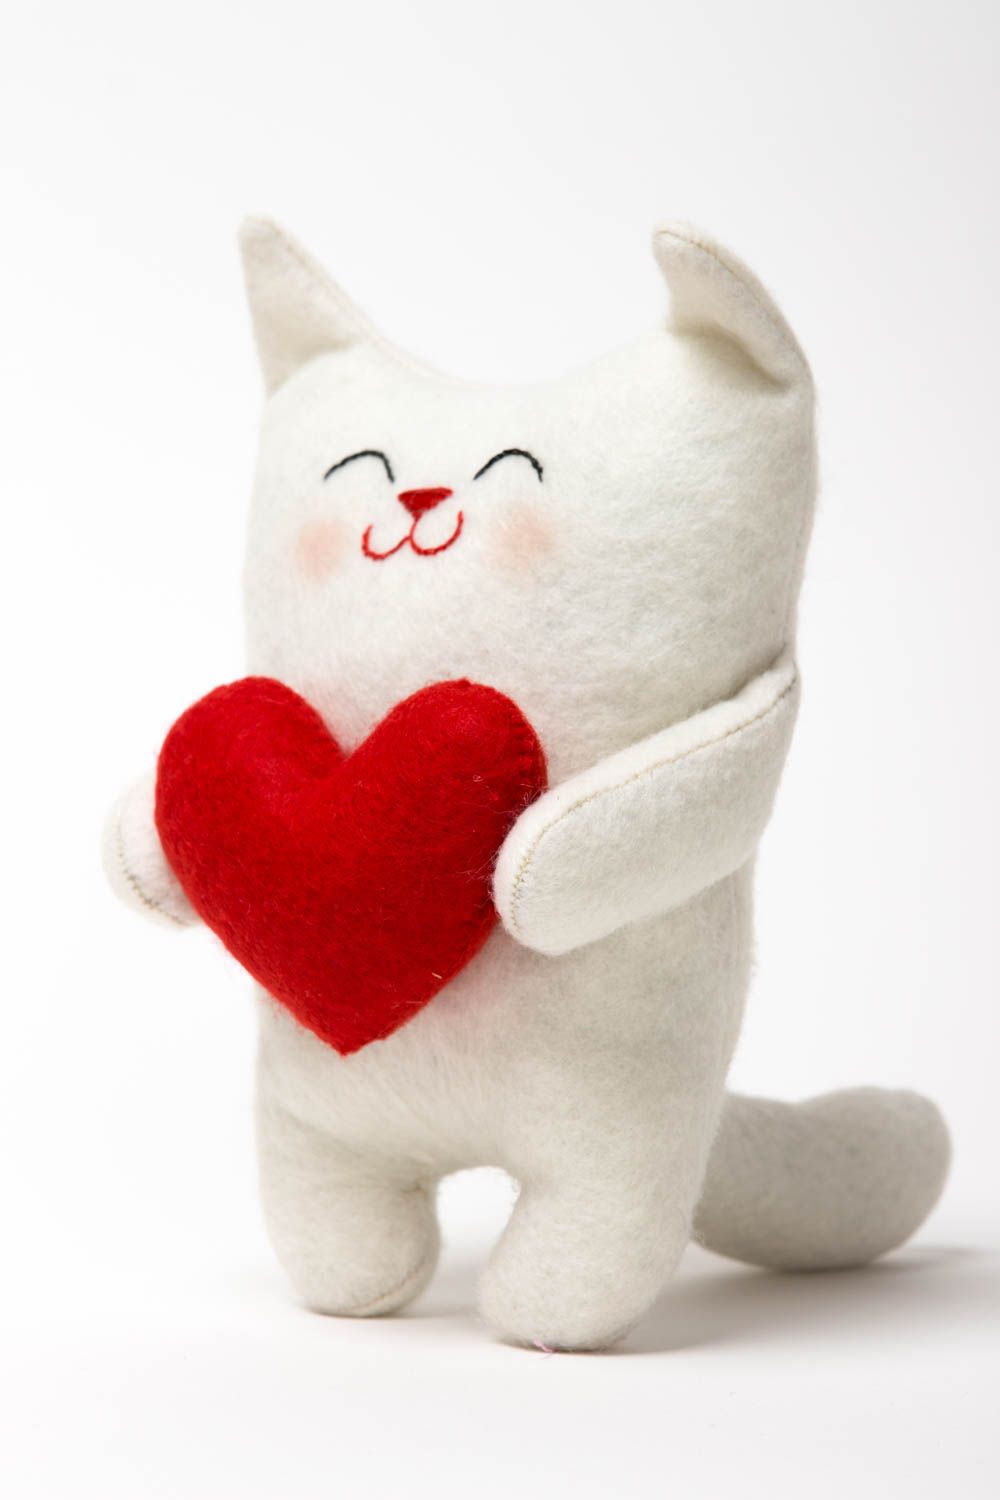 Игрушка ручной работы игрушка кот интересный подарок игрушка белая с сердечком фото 2